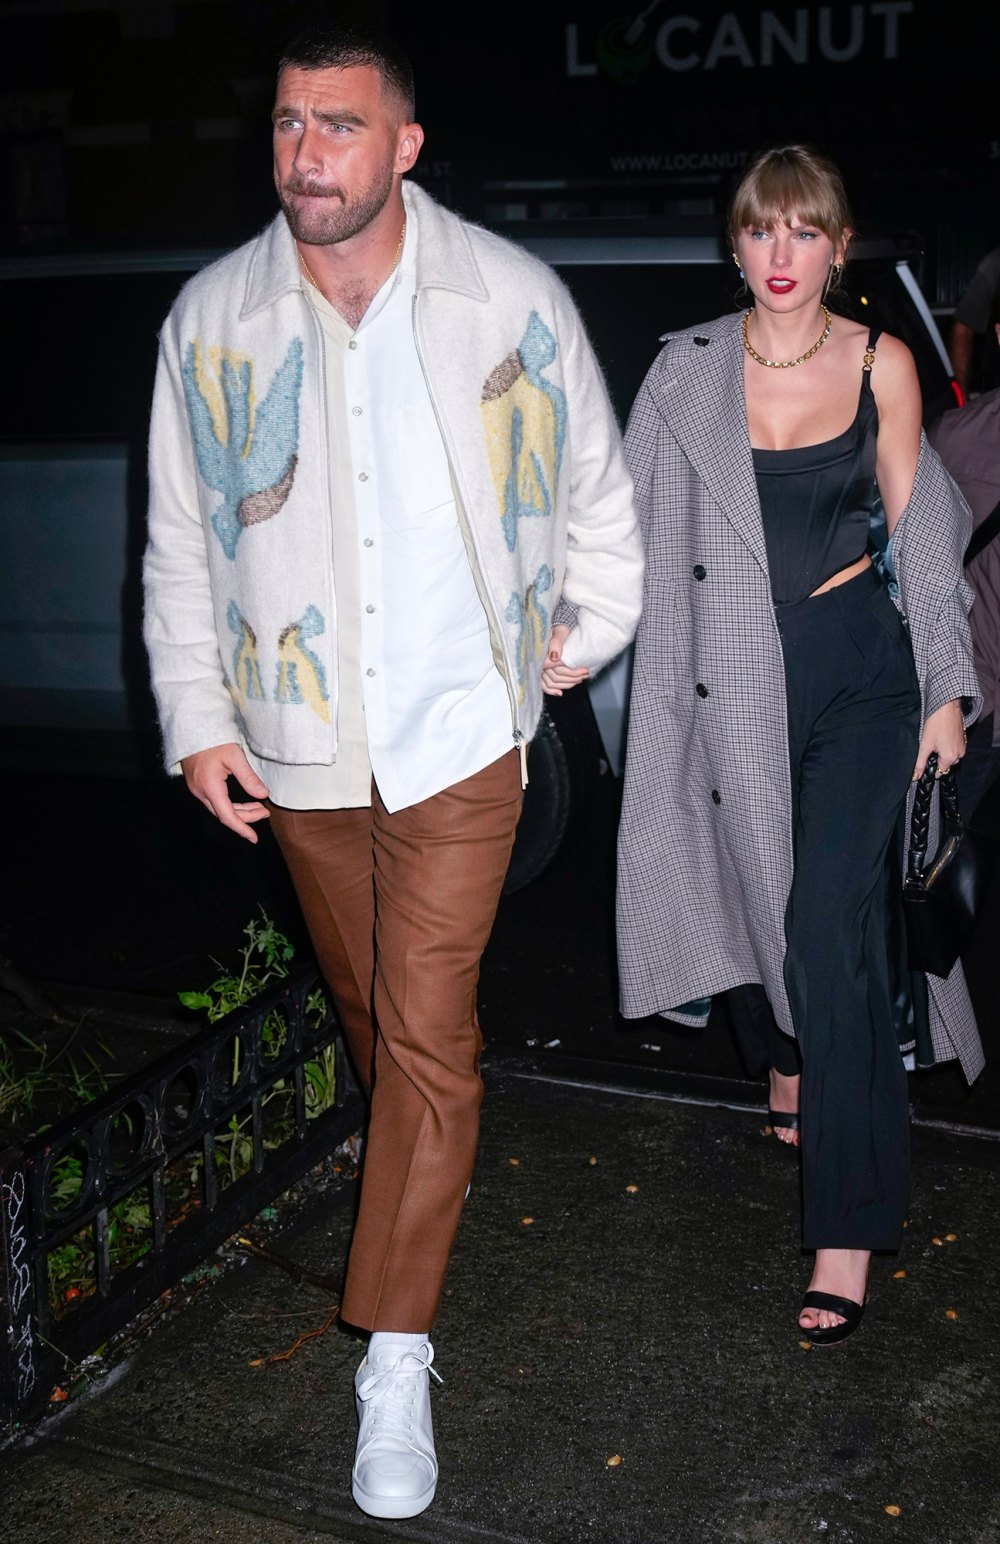 Taylor Swift und Travis Kelce halten beim Abendessen in Buenos Aires Händchen, nachdem der NFL-Star in der Stadt angekommen ist